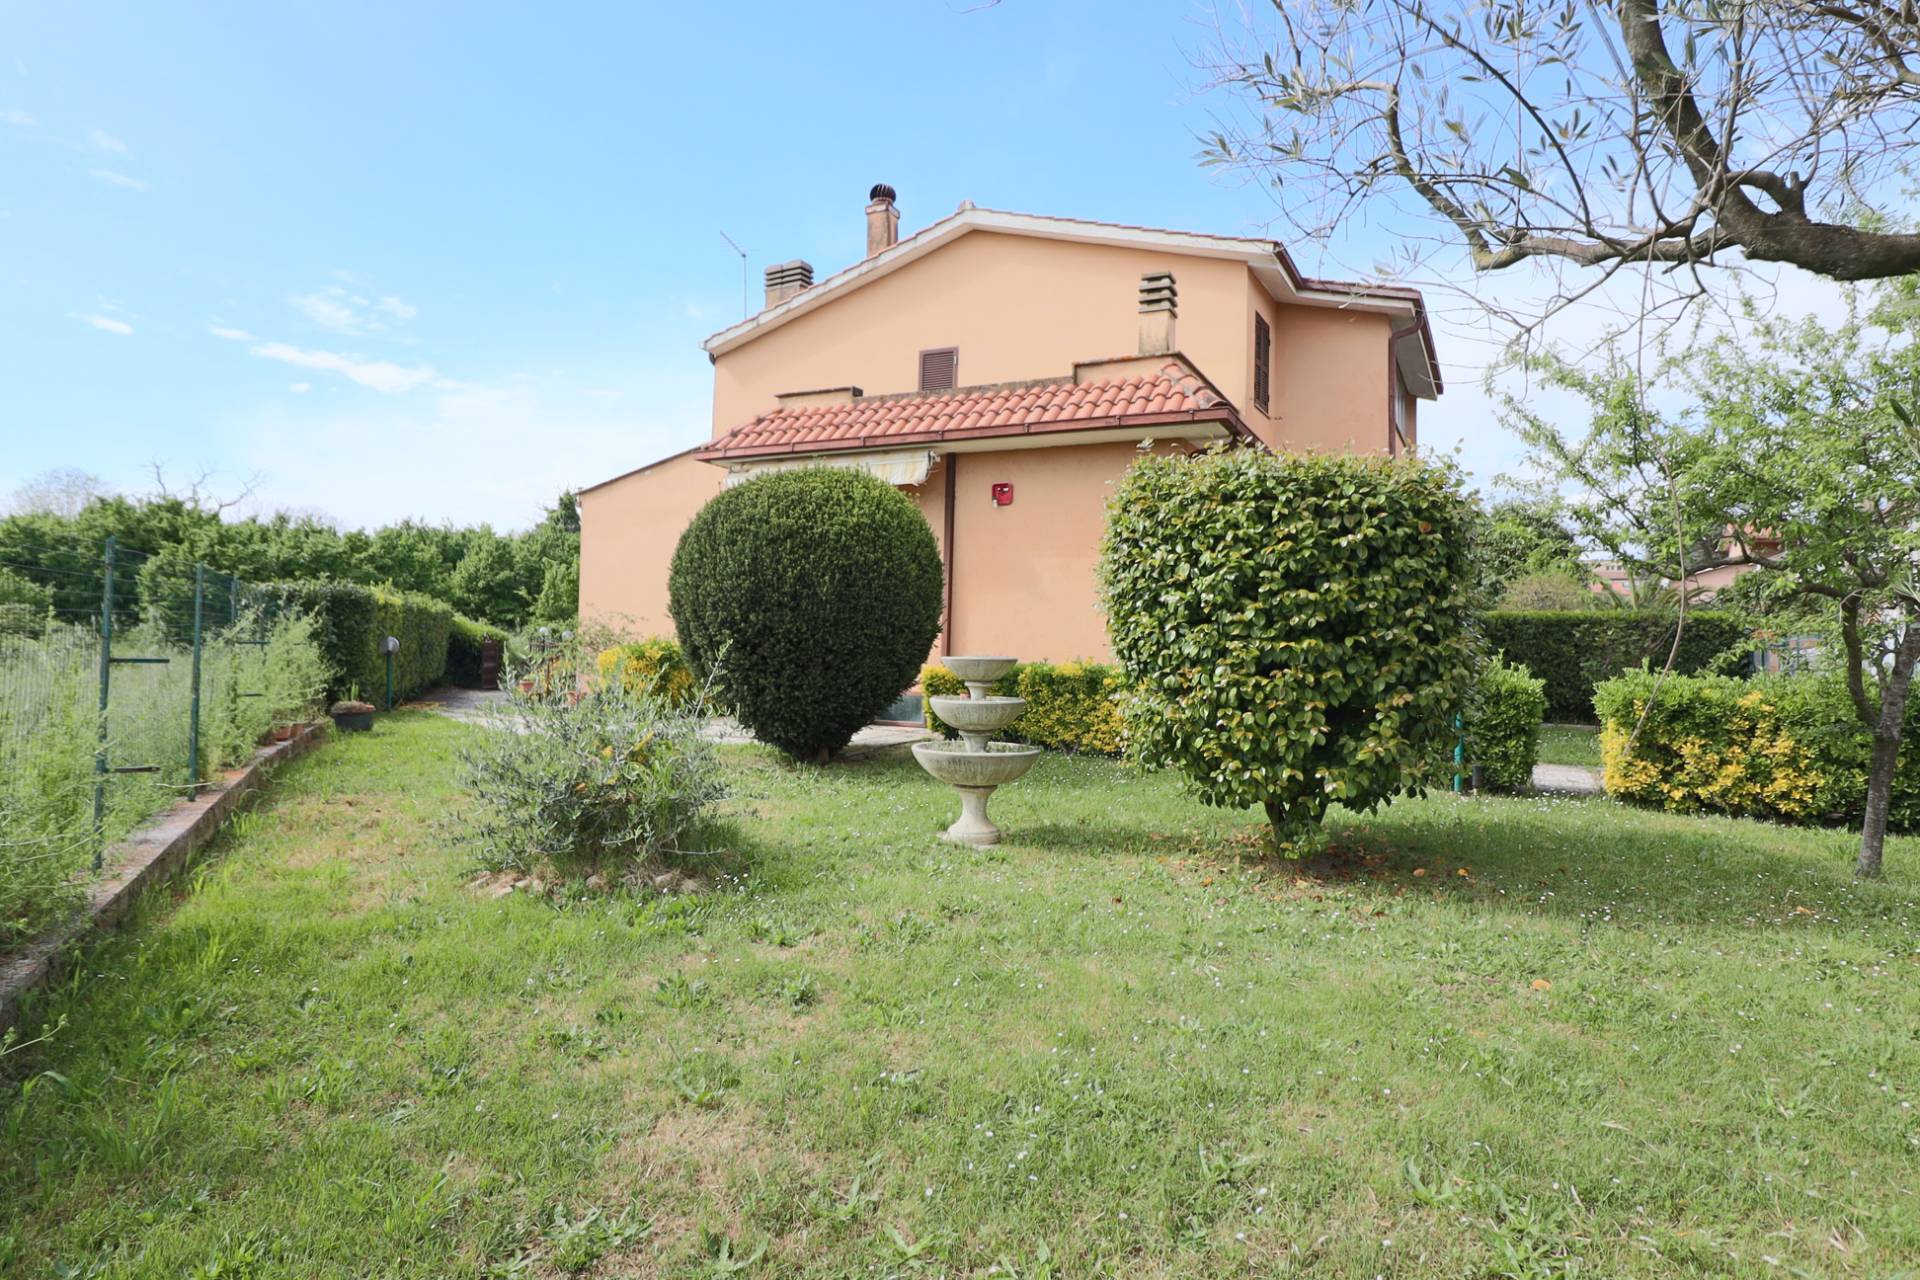 Villa a Schiera in vendita a Ronciglione, 9 locali, zona Località: semi-centrale, prezzo € 245.000 | PortaleAgenzieImmobiliari.it